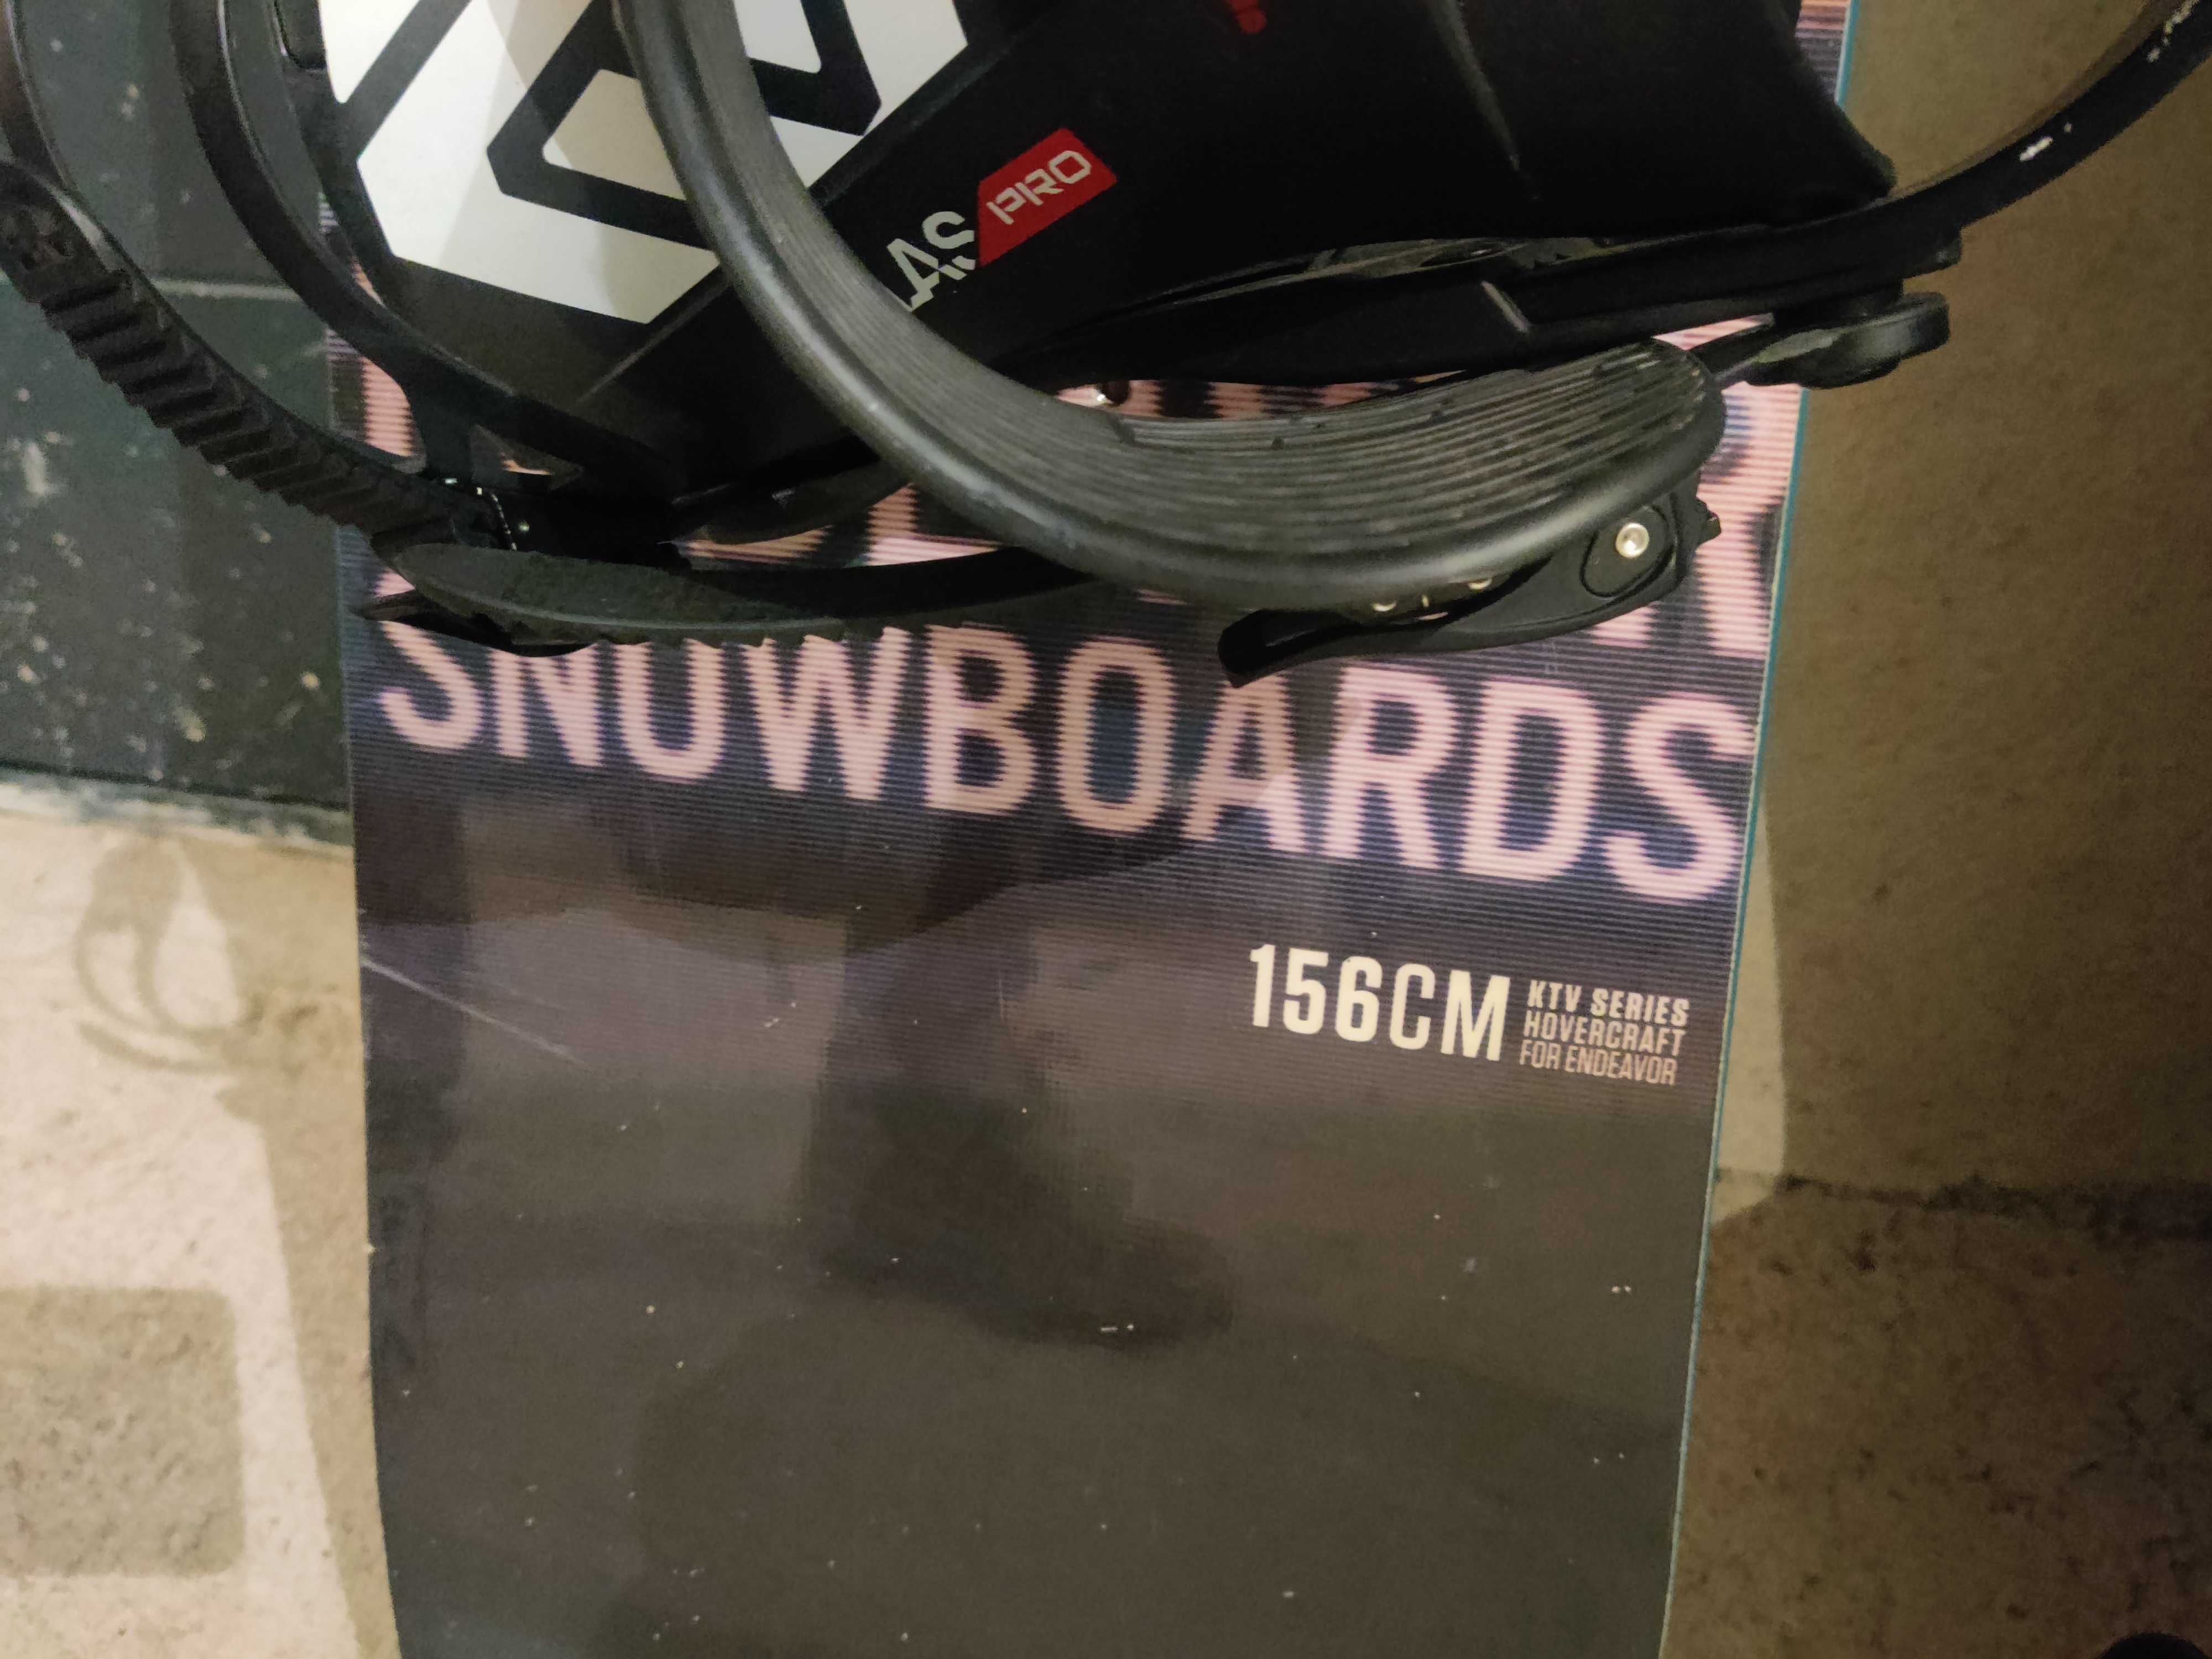 Snowboard Endeavour 156 cm- 400 RON